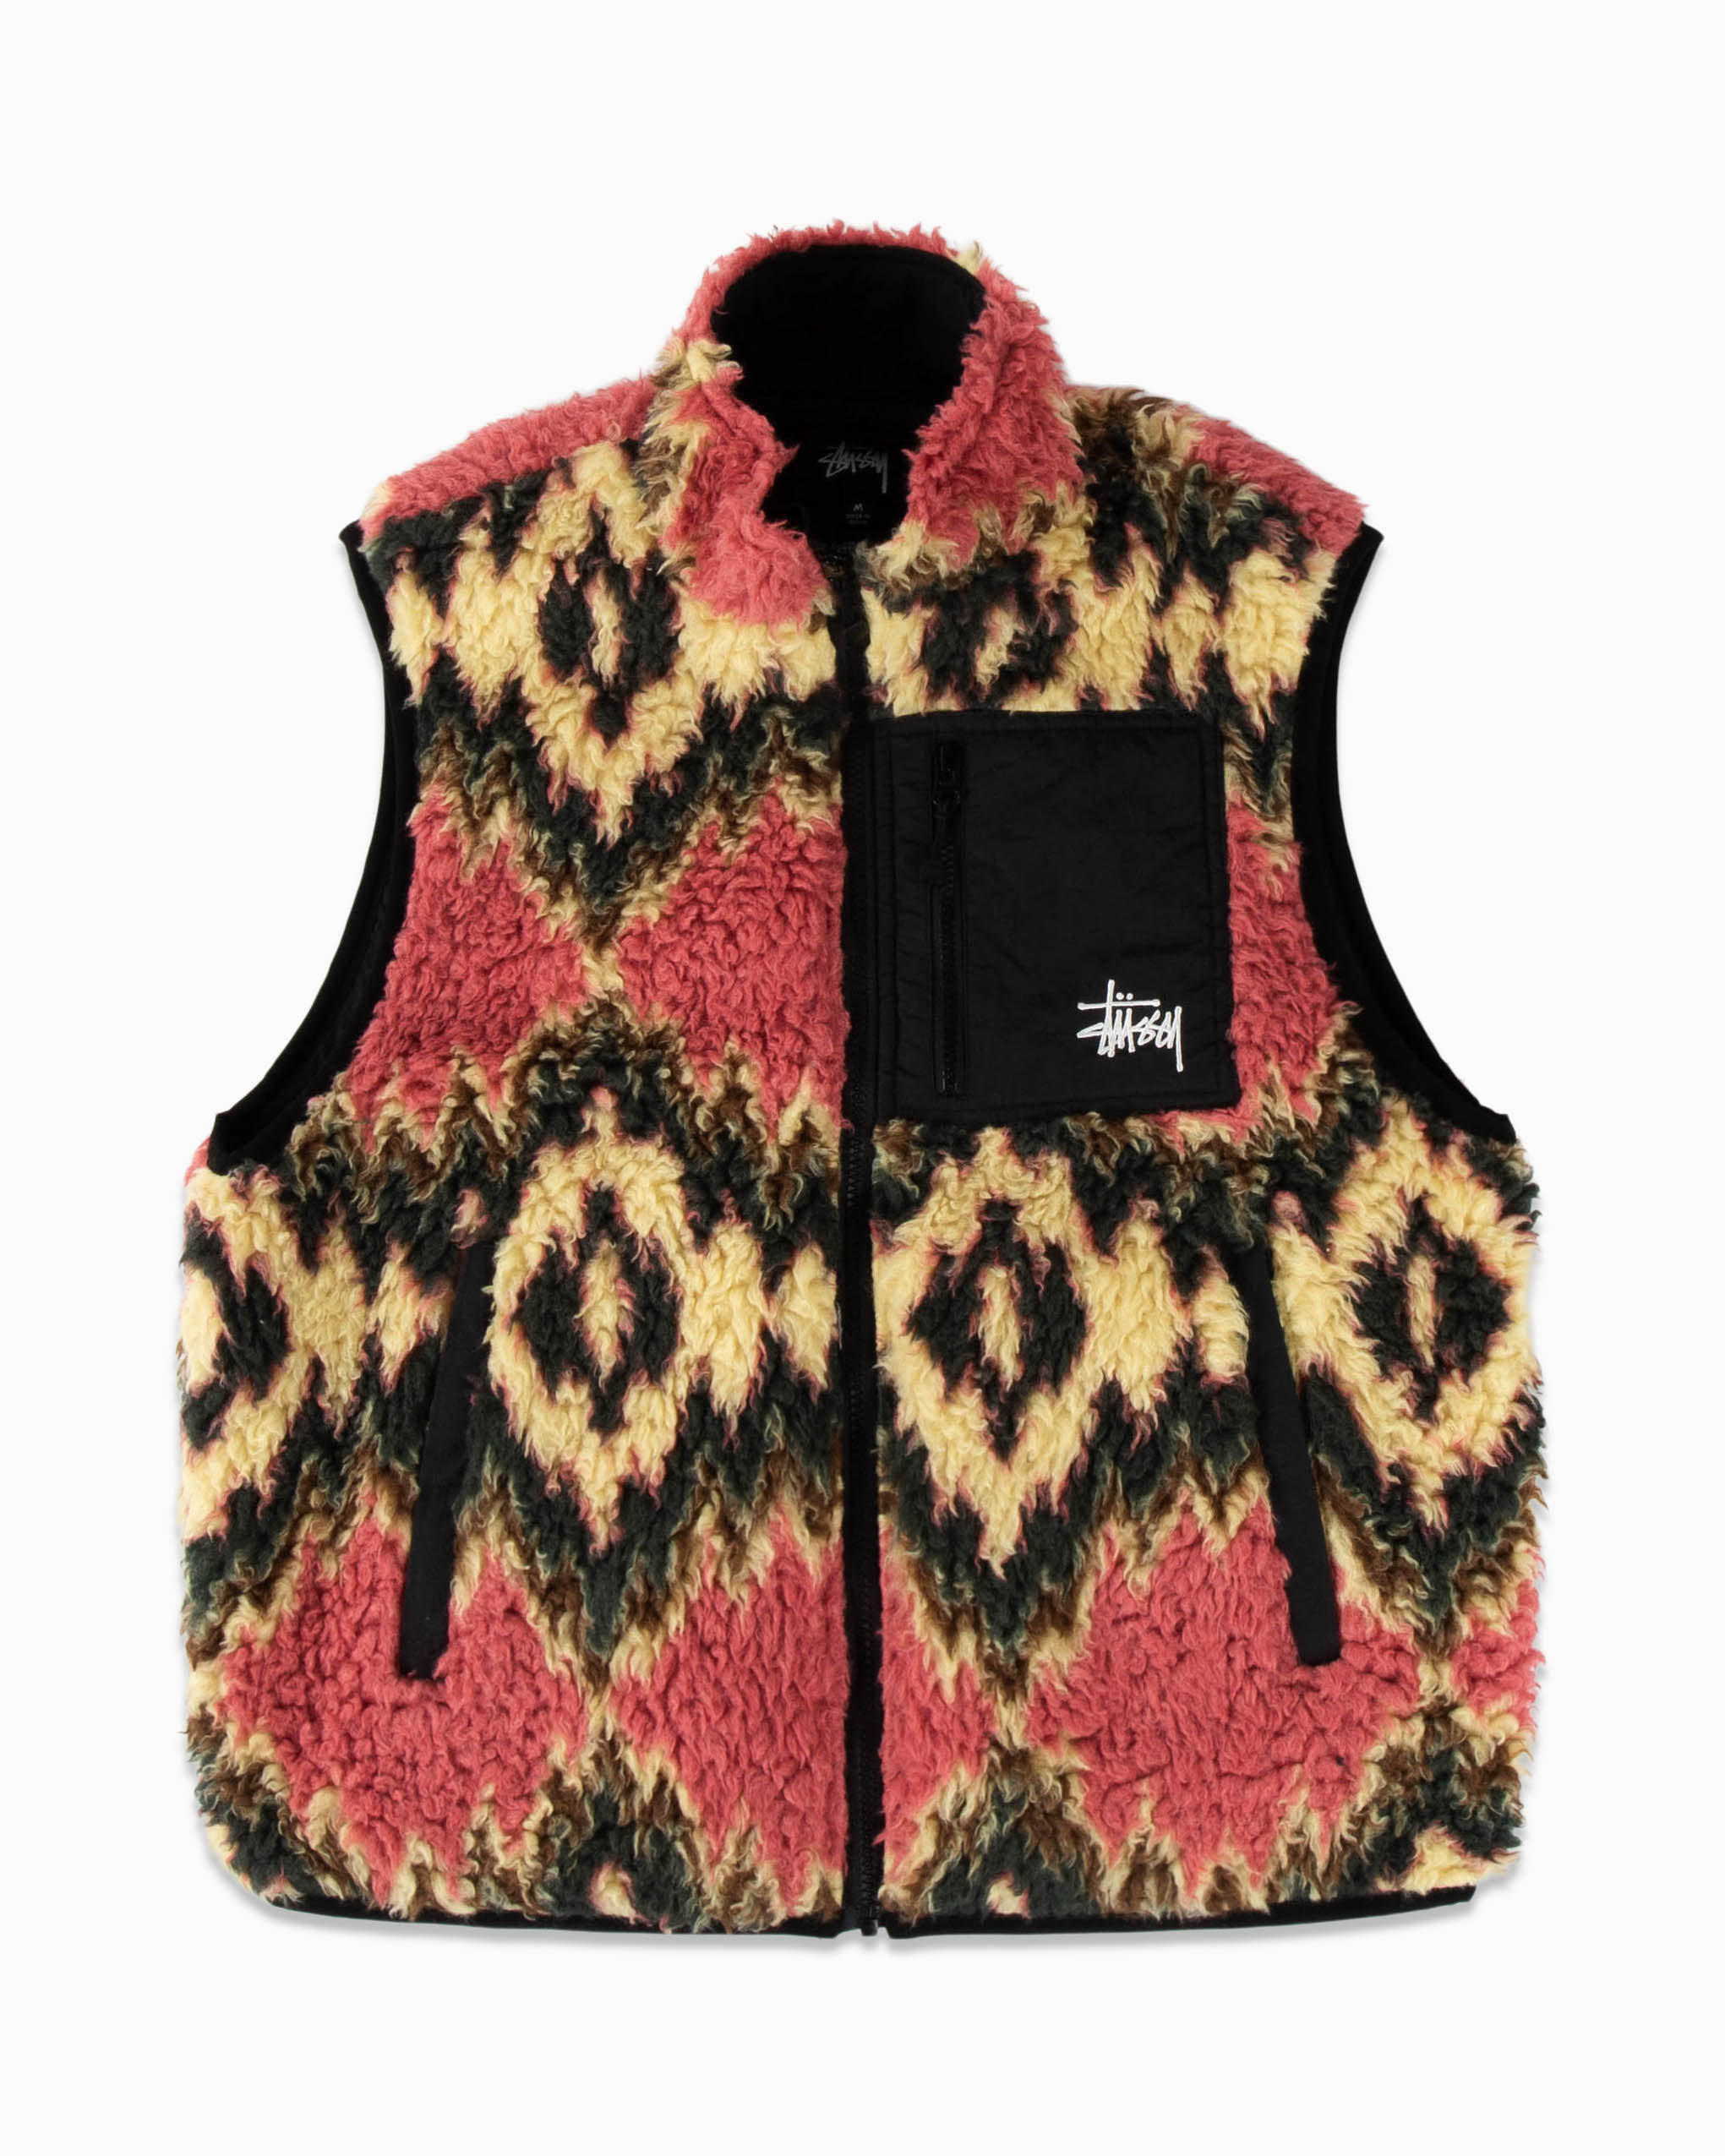 18480円買取 販売価格 売り出し最安 stussy fillmore sherpa vest